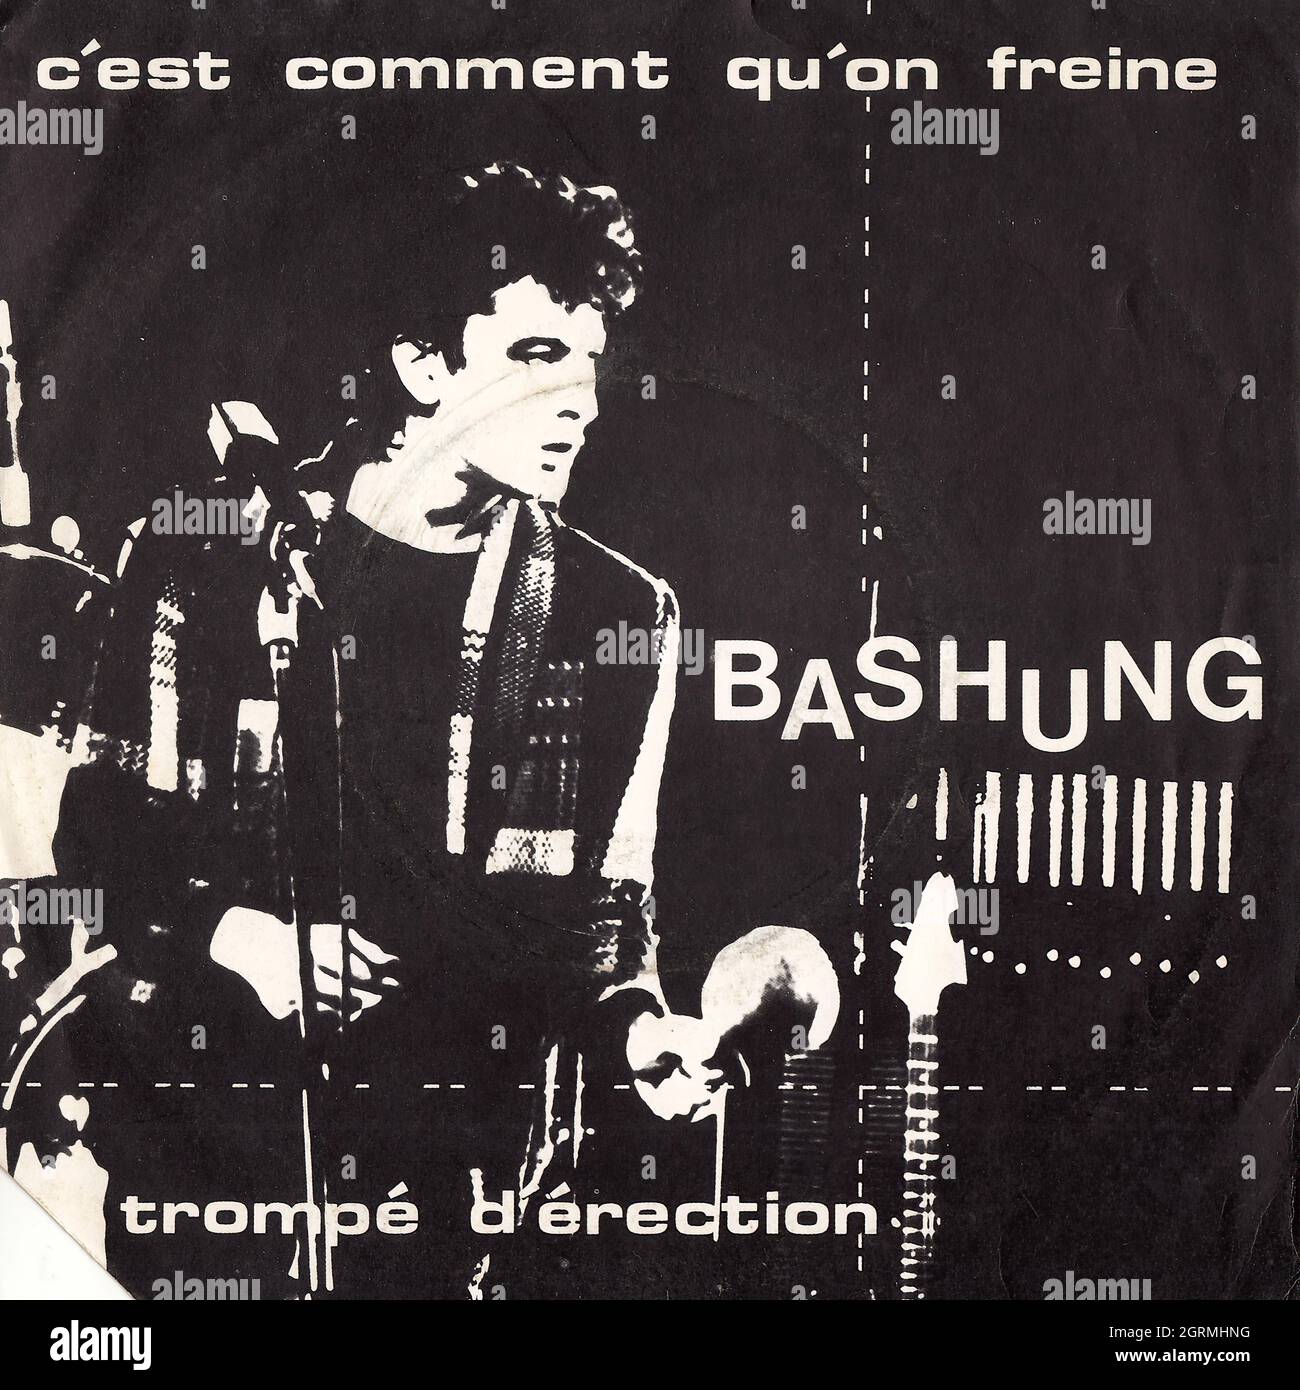 Alain Bashung - C'est comment qu'on freine - Trompé d'érection 45rpm -  Vintage Vinyl Record Cover Stock Photo - Alamy